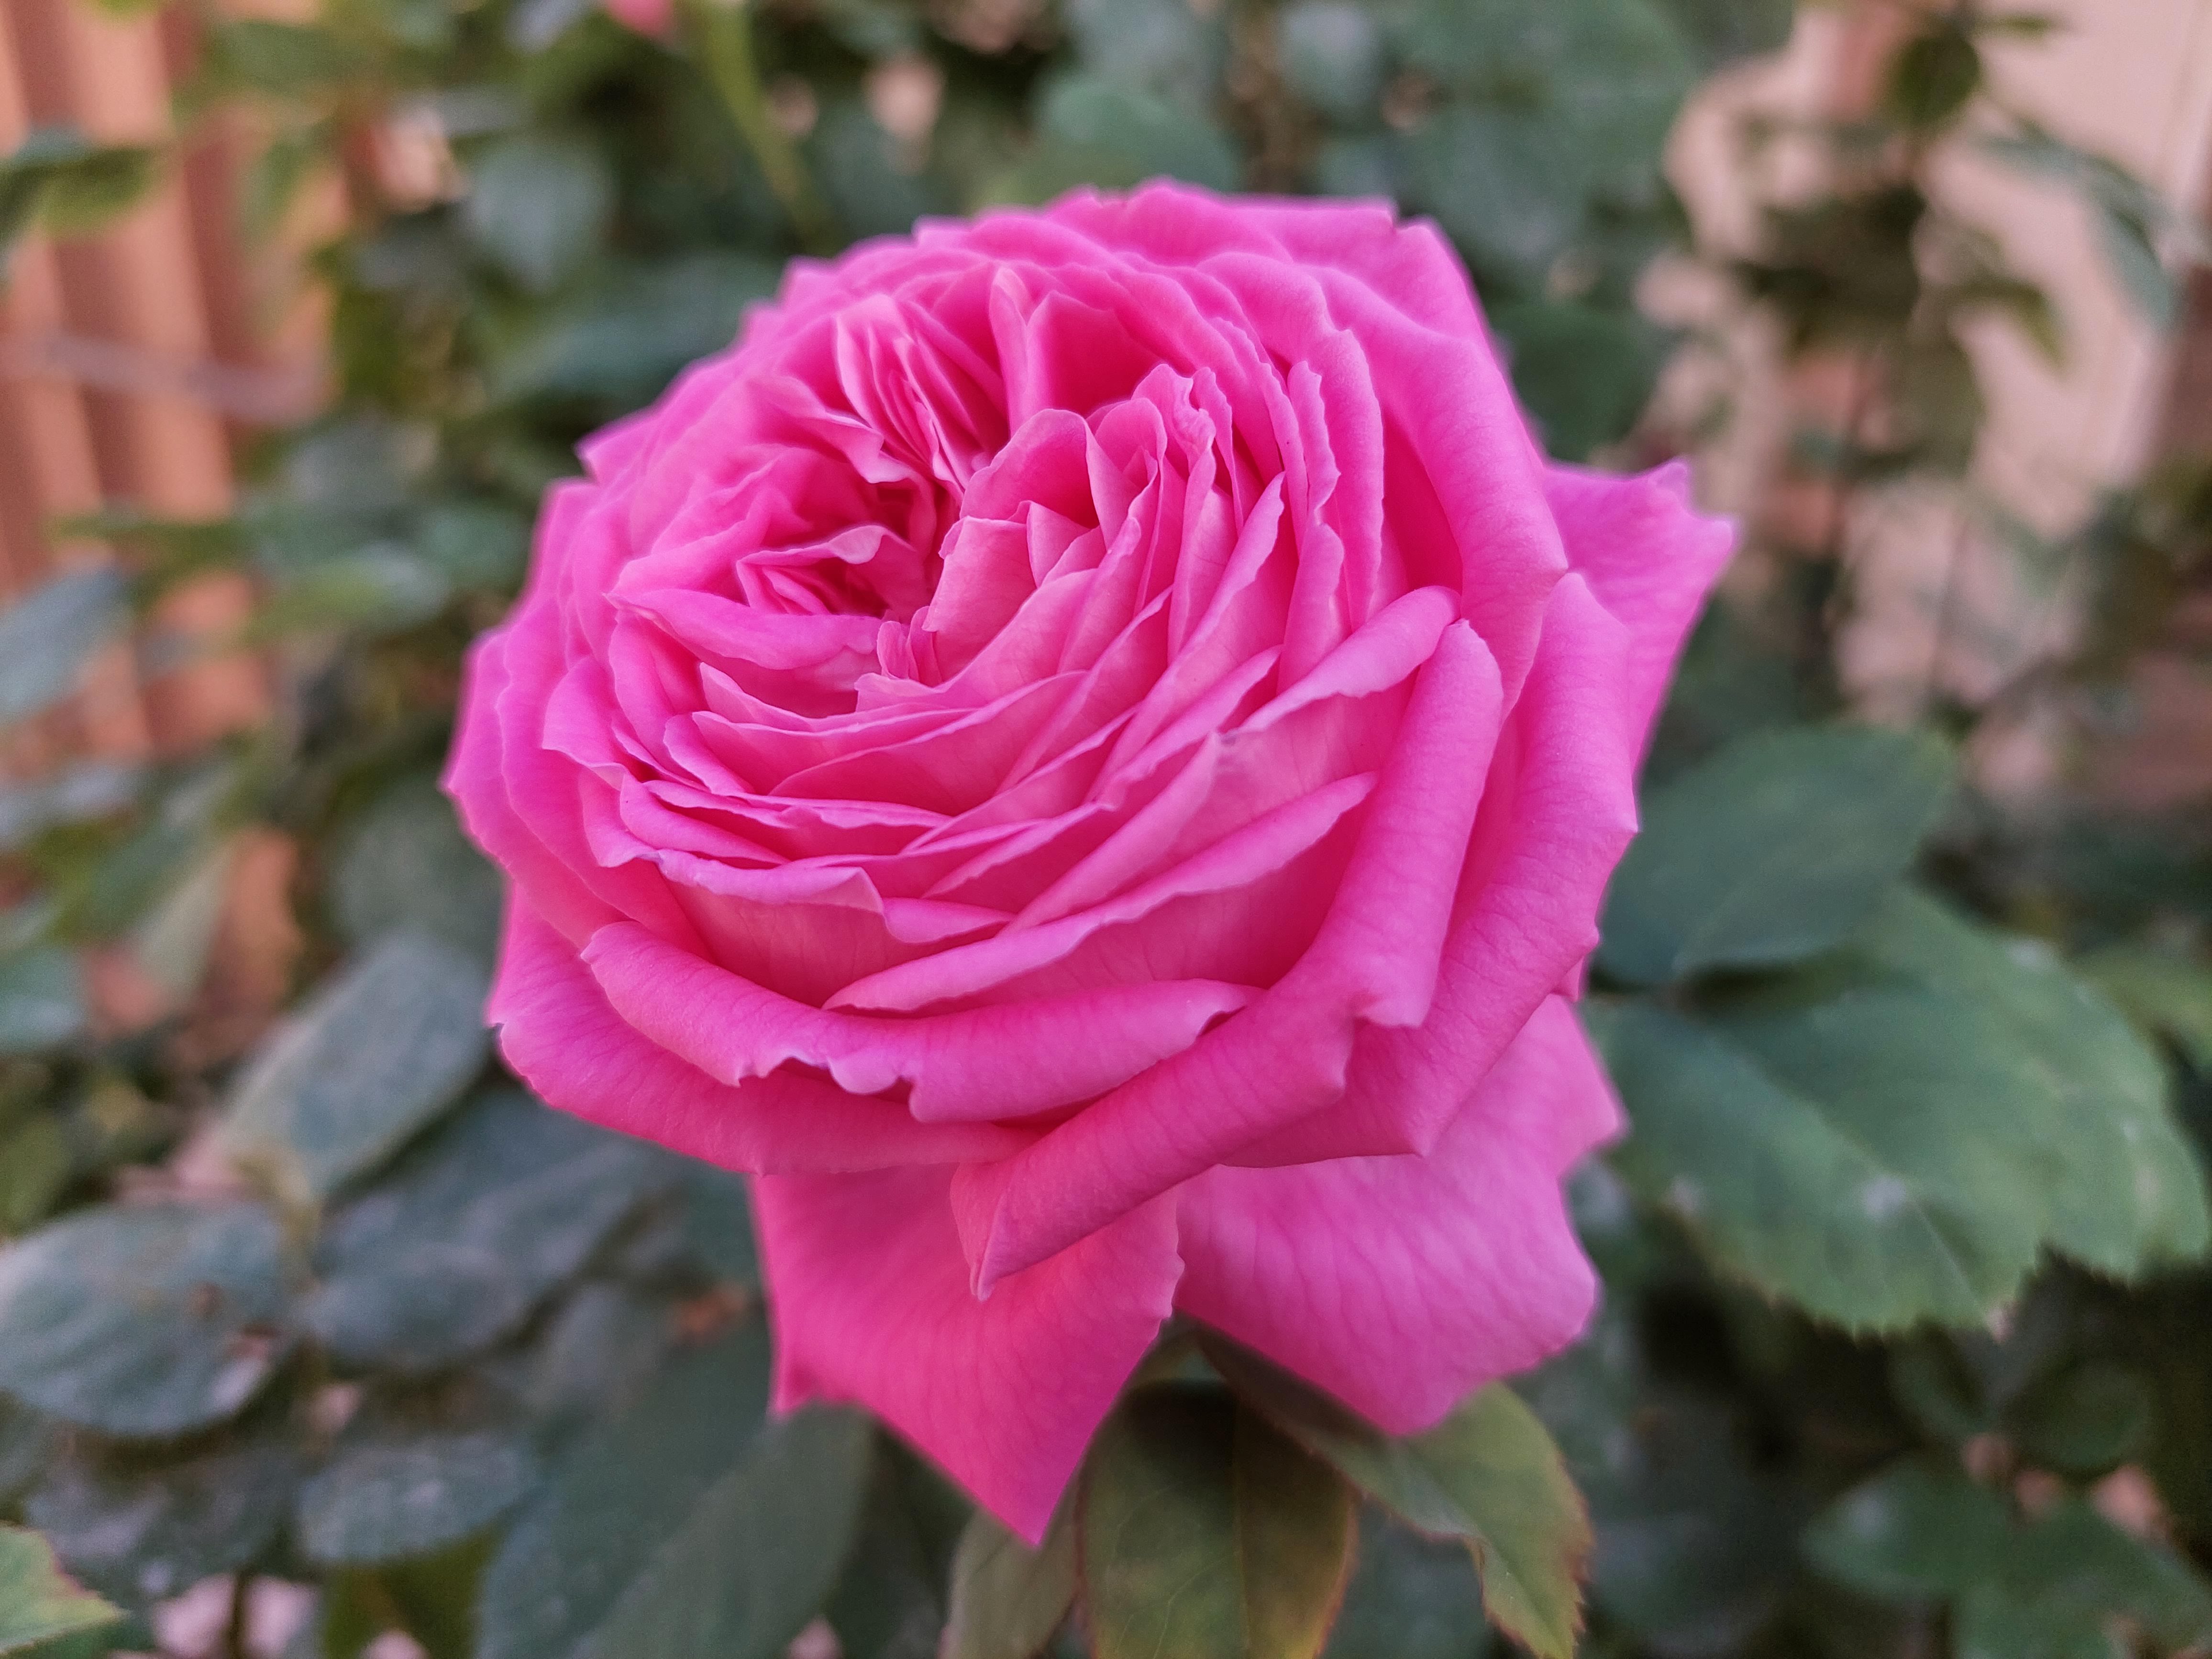 عکس نمونه دوربین واید گلکسی A72 در نور مناسب - تصویری از یک گل رز